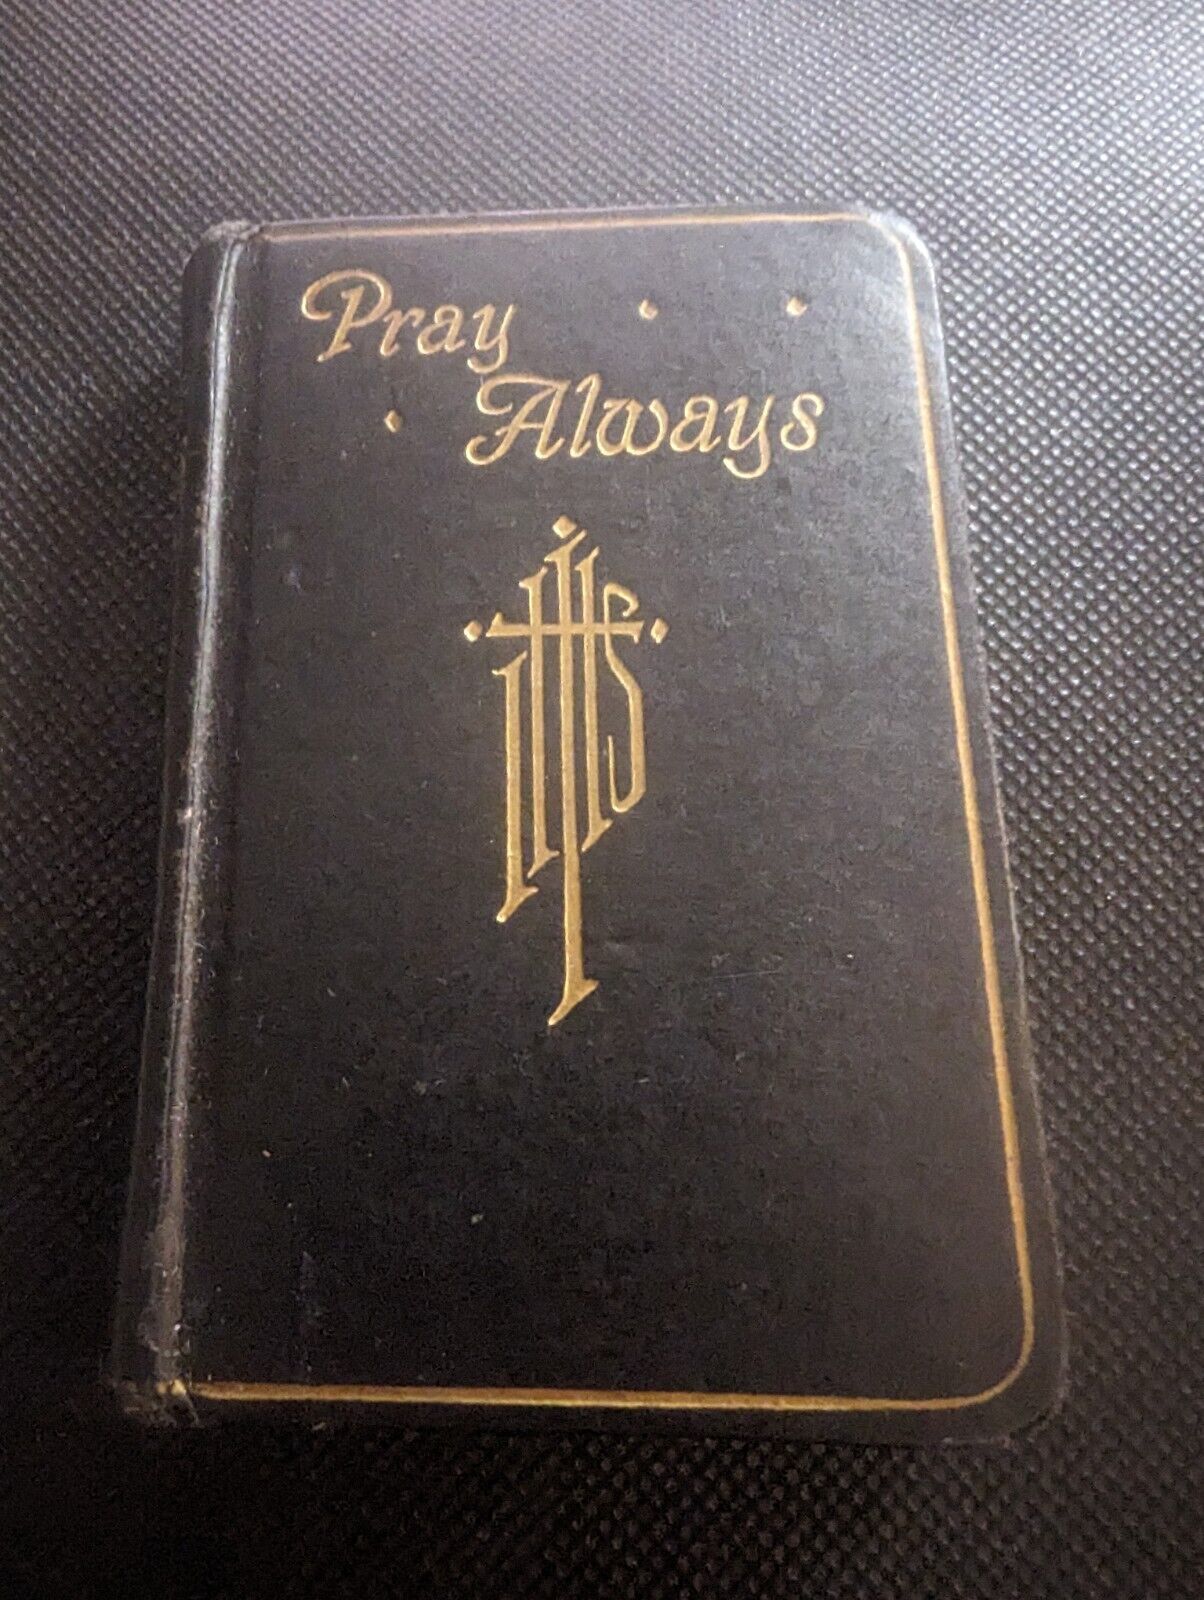 1936 PRAY ALWAYS PRAYER BOOK & SCAPULAR FOR LITTLE CHILDREN A. SAUSEN - EX COND.